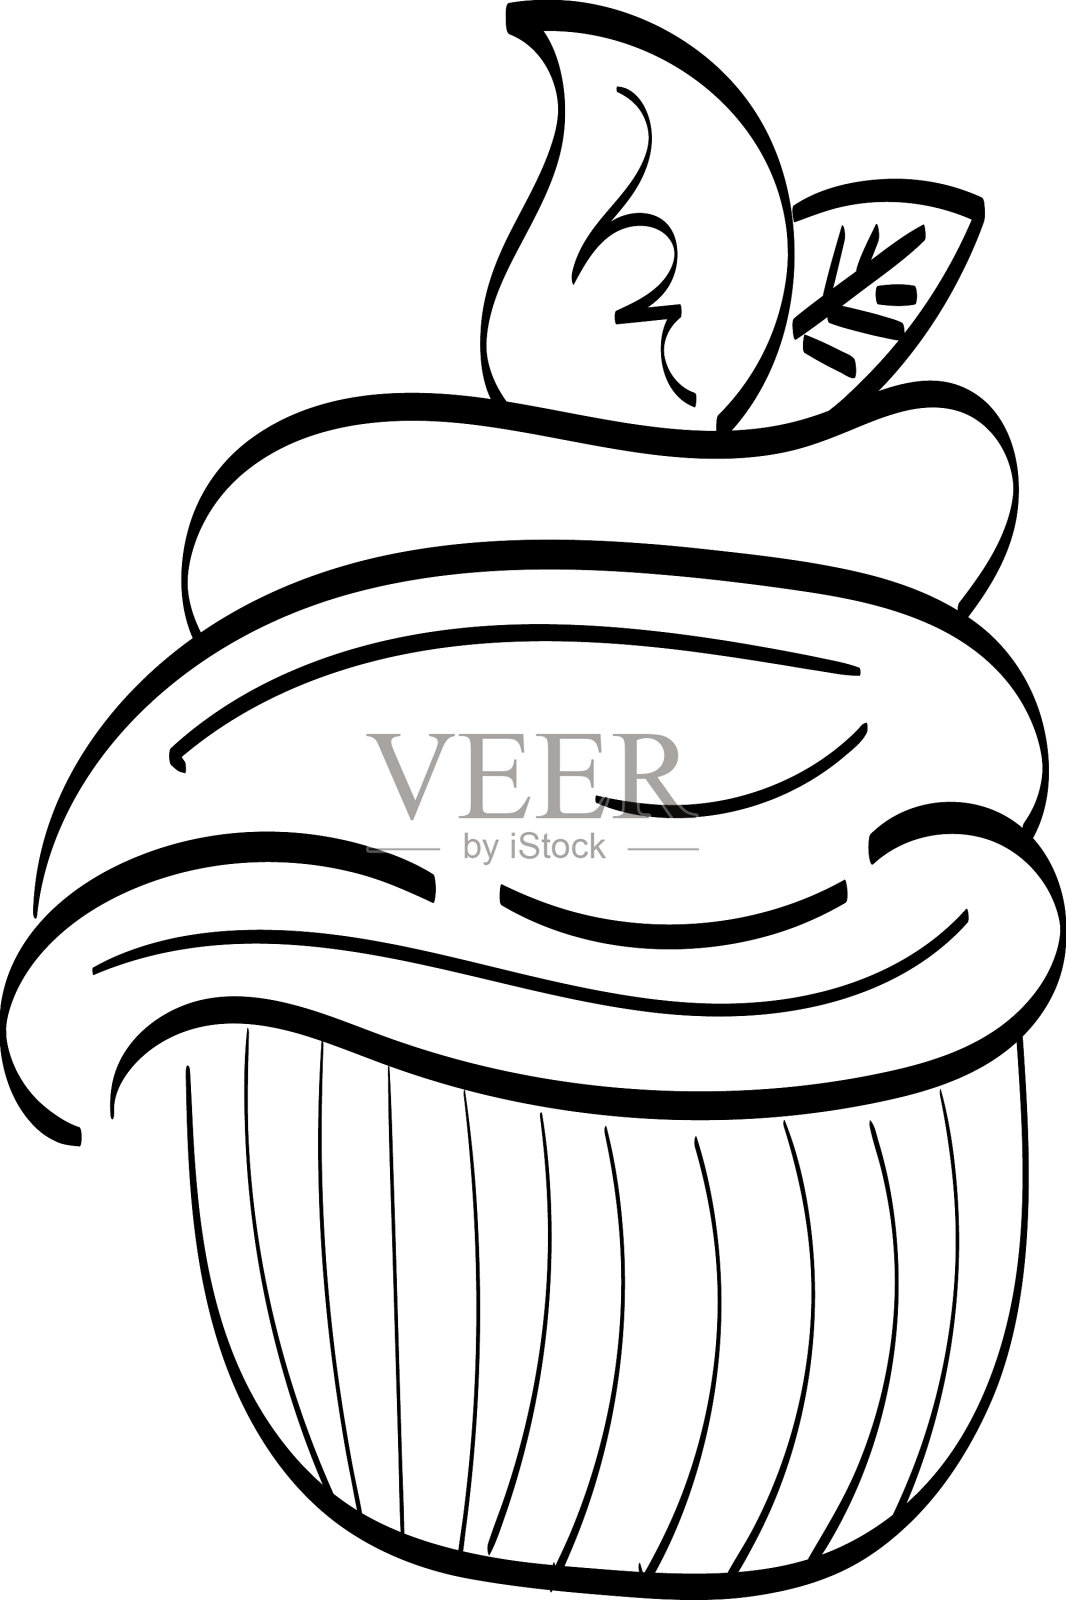 例证画的杯子蛋糕图画例证白色背景 向量例证. 插画 包括有 杯形蛋糕, 逗人喜爱, 乐趣, 蛋糕, 庆祝 - 106219348